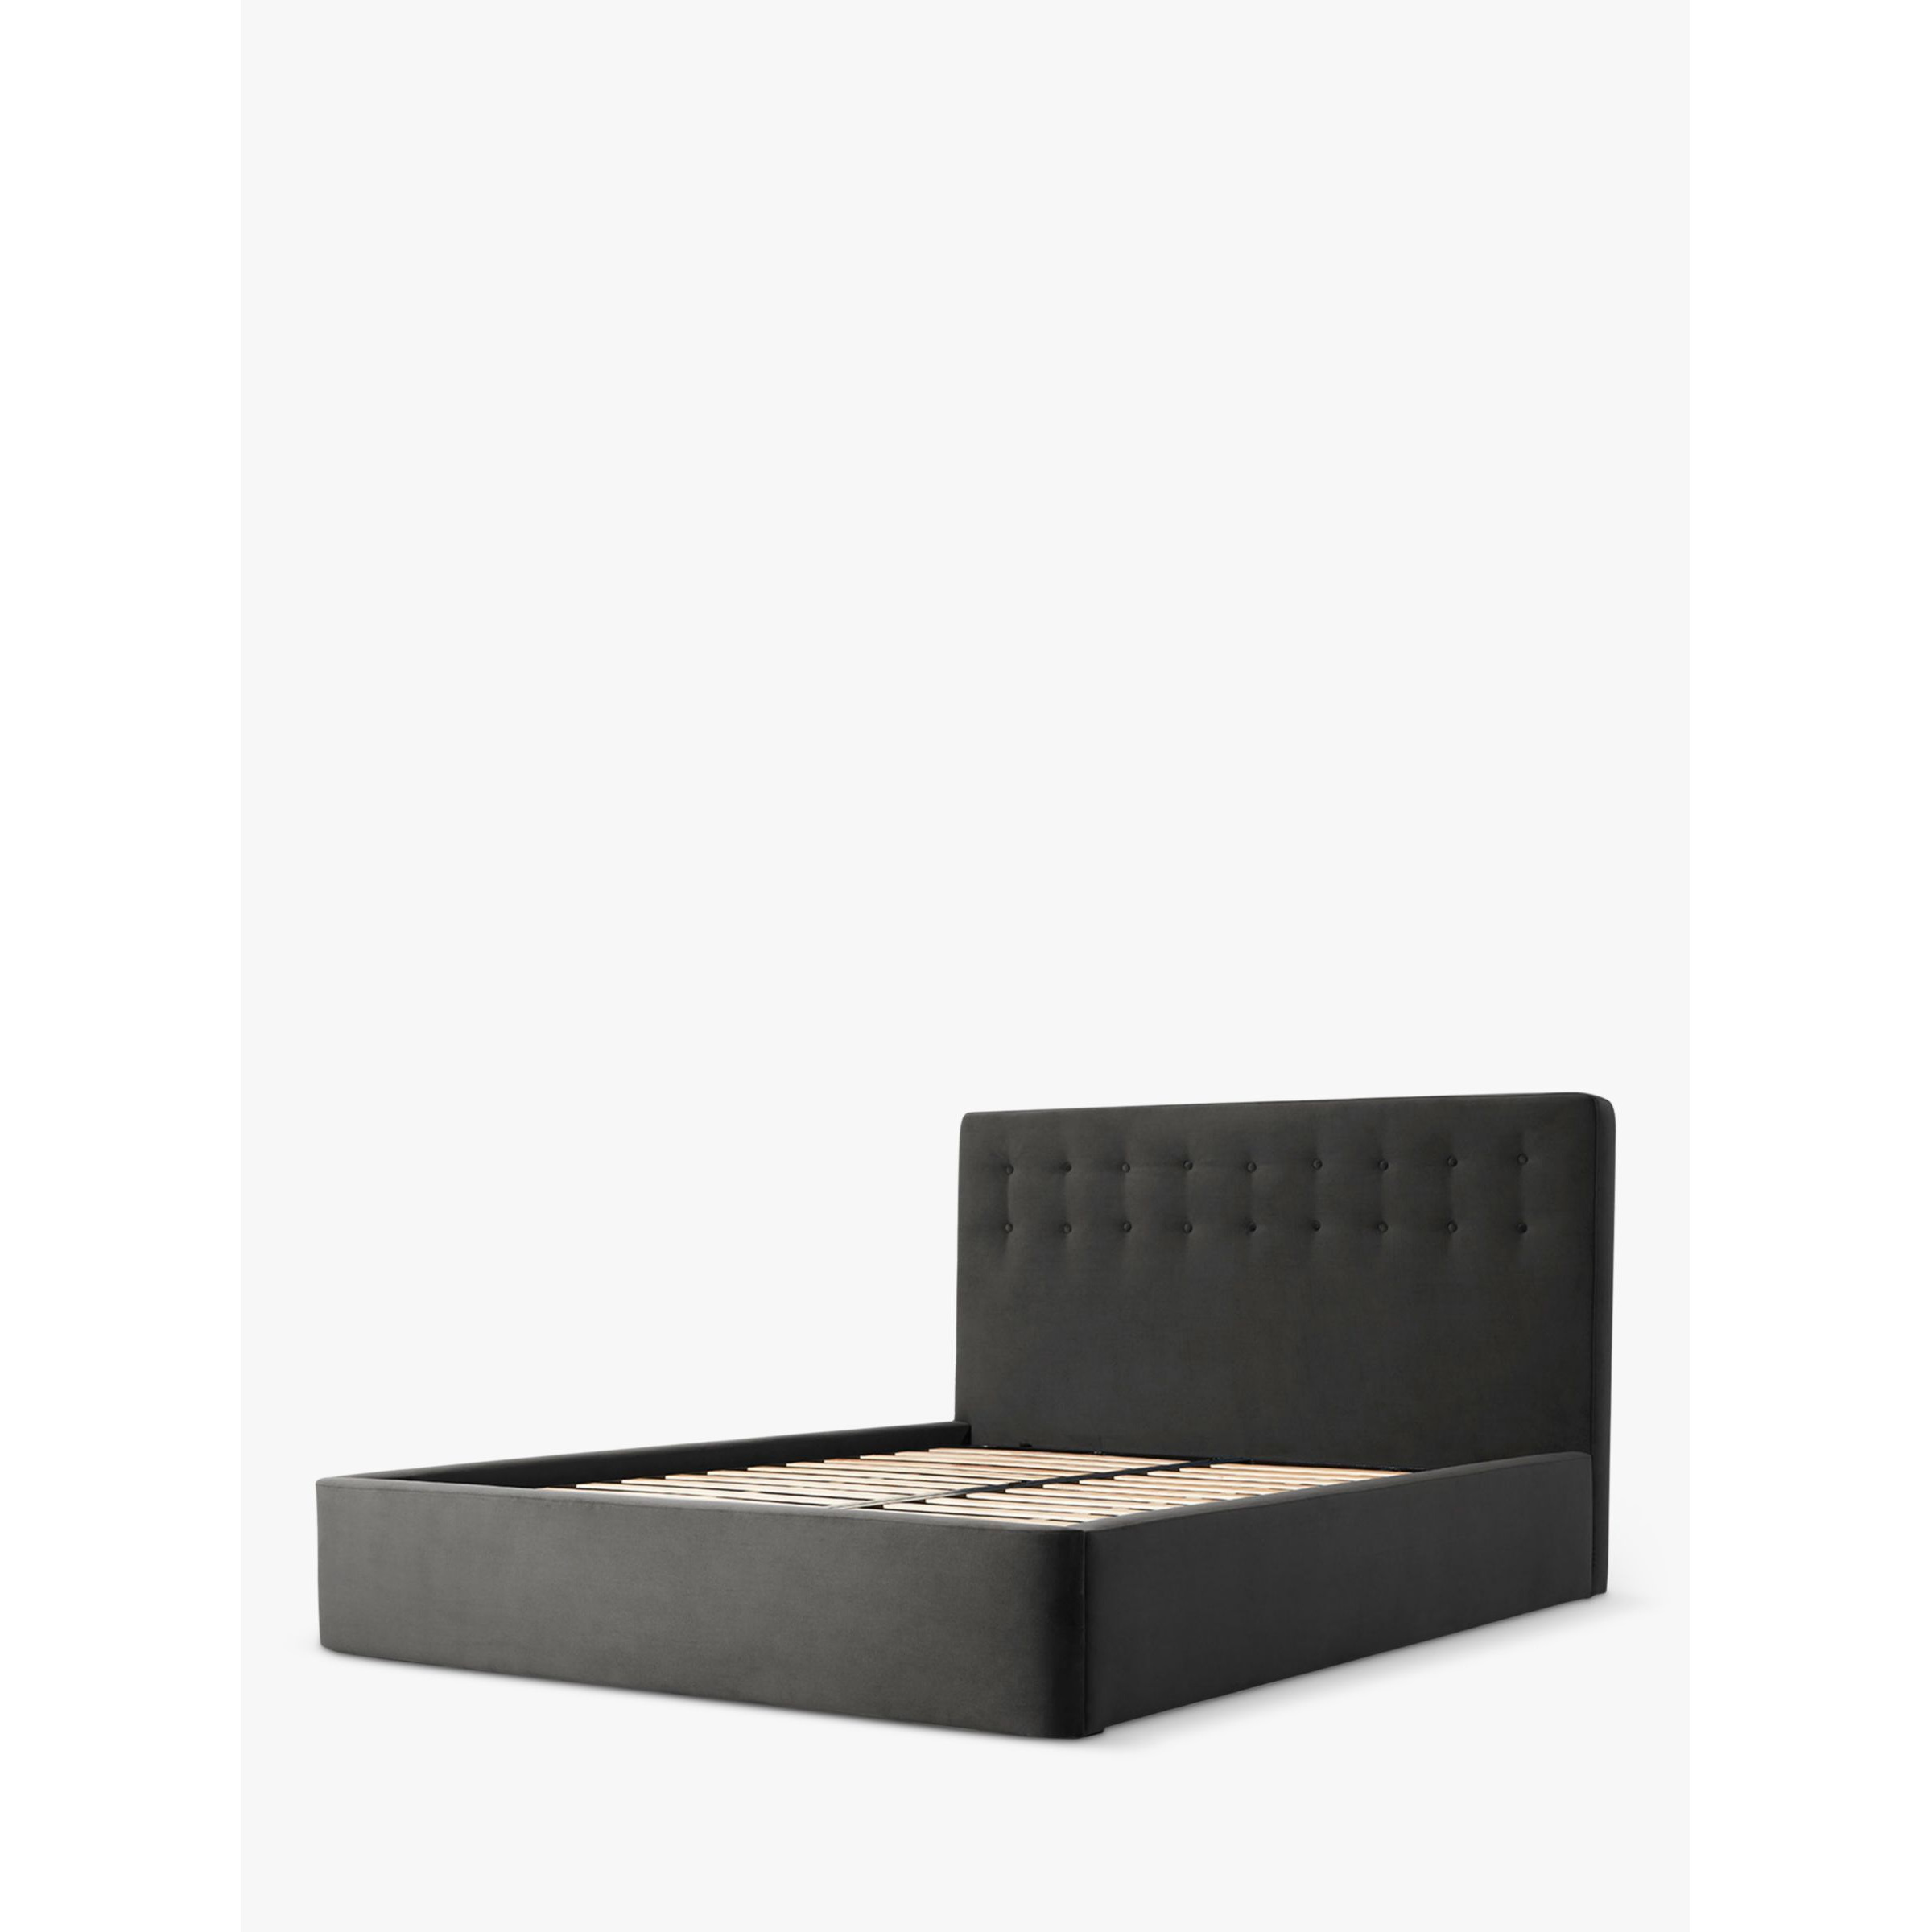 Swyft Bed 01 Upholstered Bed Frame, King Size - image 1